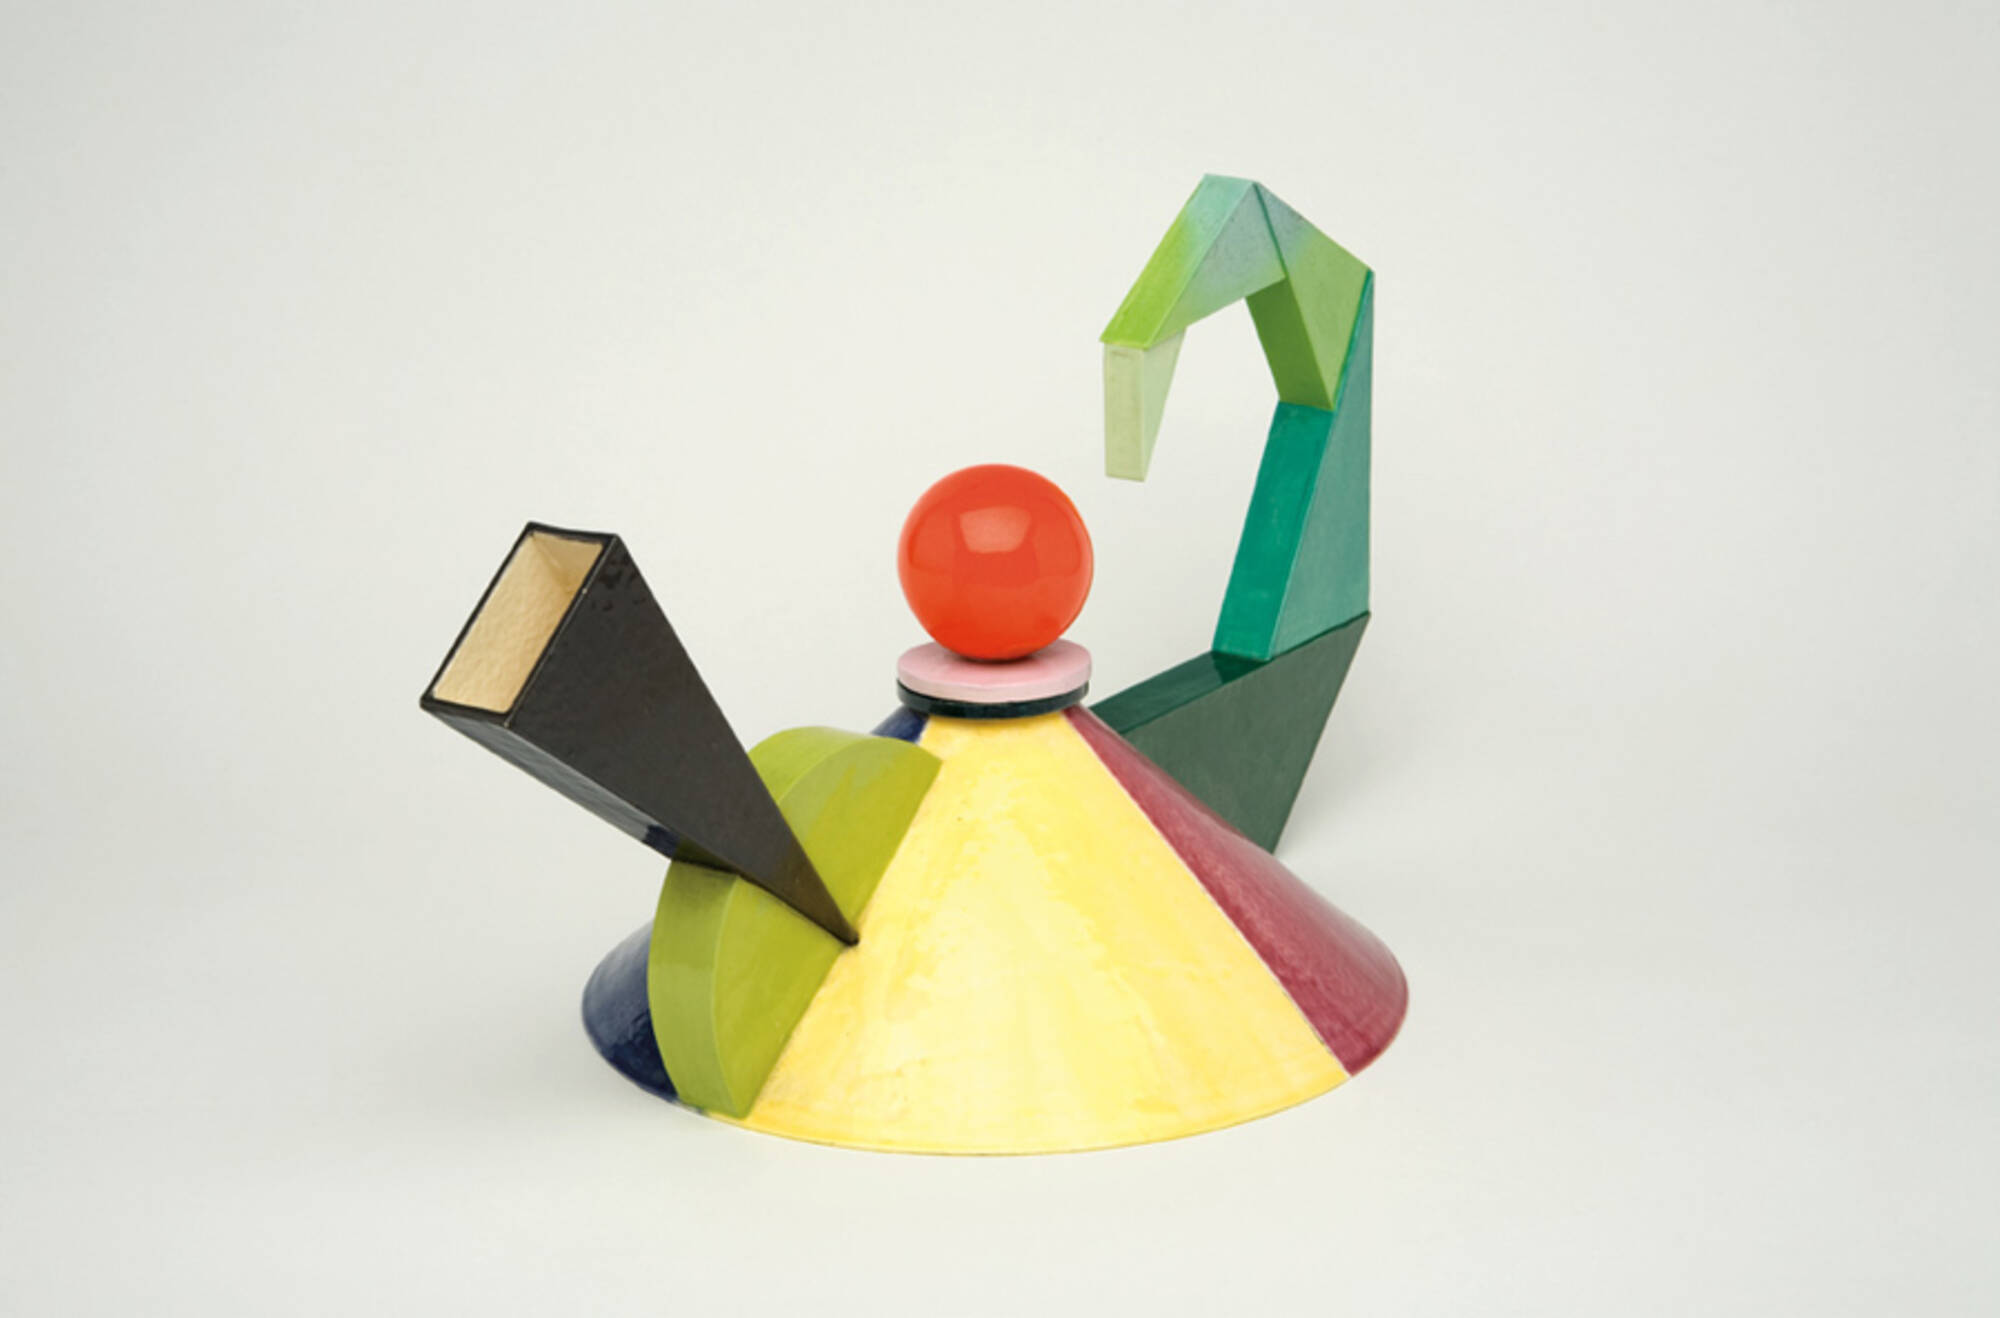 483: PETER SHIRE, Teapot < California Modern Art & Design, 14 